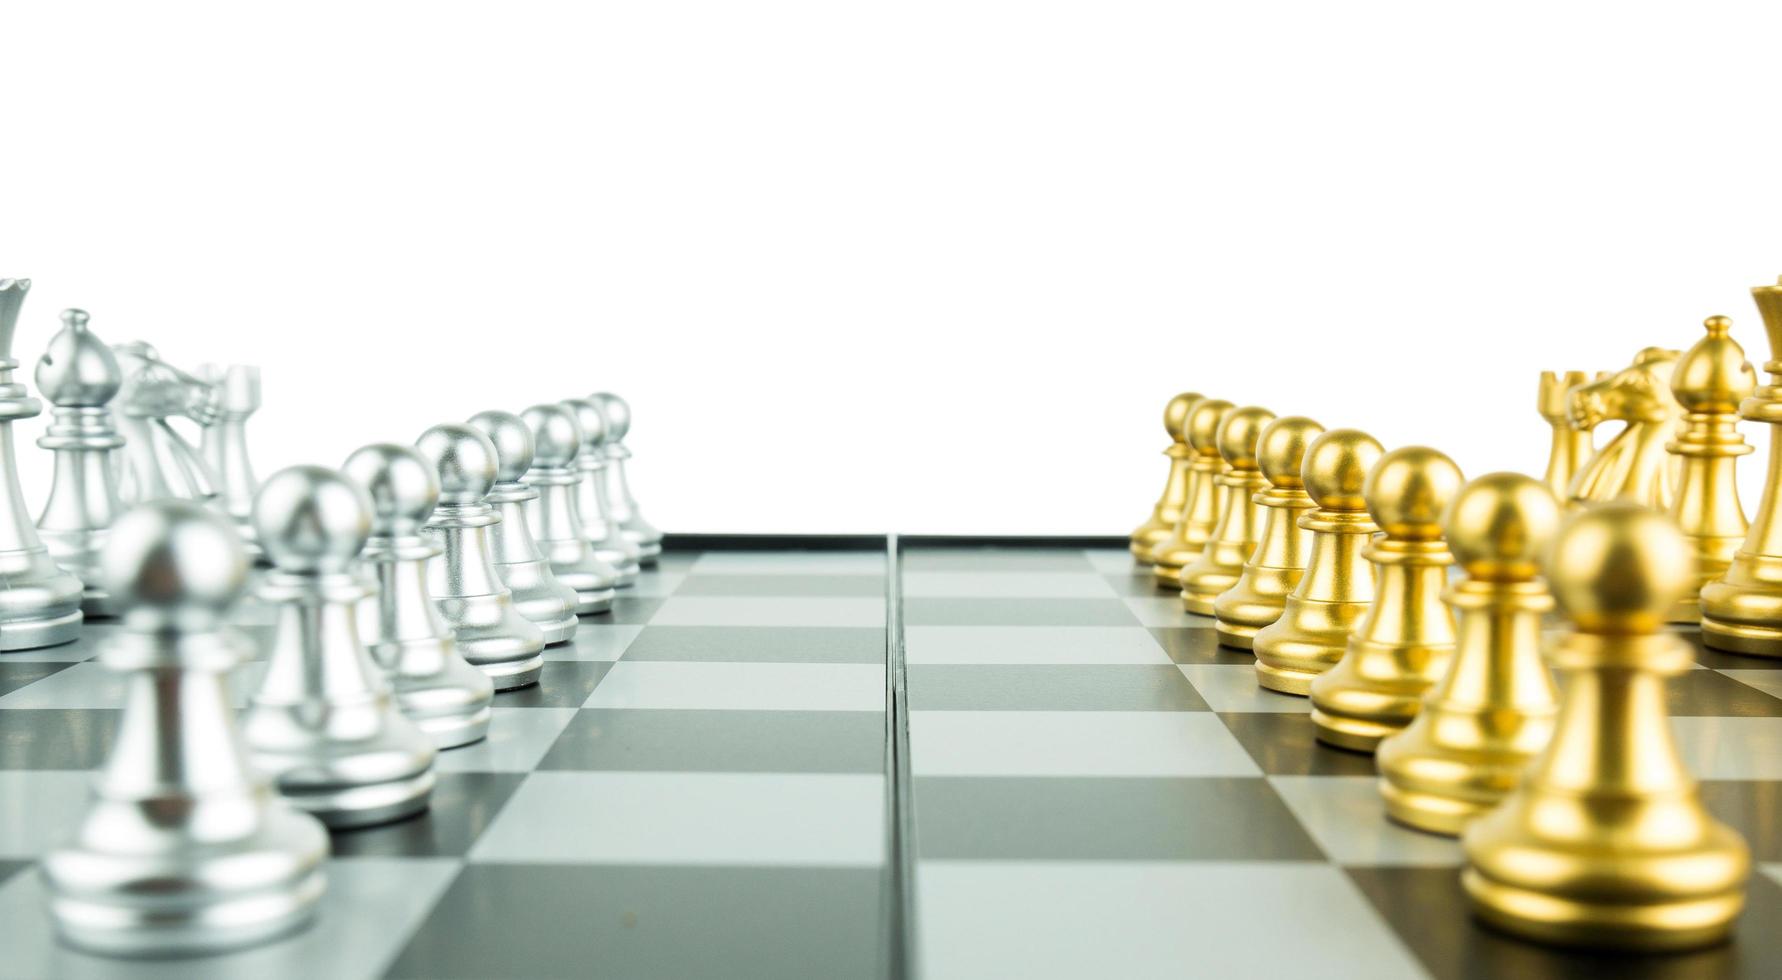 Schachbrettspielkonzept von Geschäftsideen und Wettbewerbs- und Strategieideenkonzept, Führungs- und Teamwork-Konzept für den Erfolg. foto